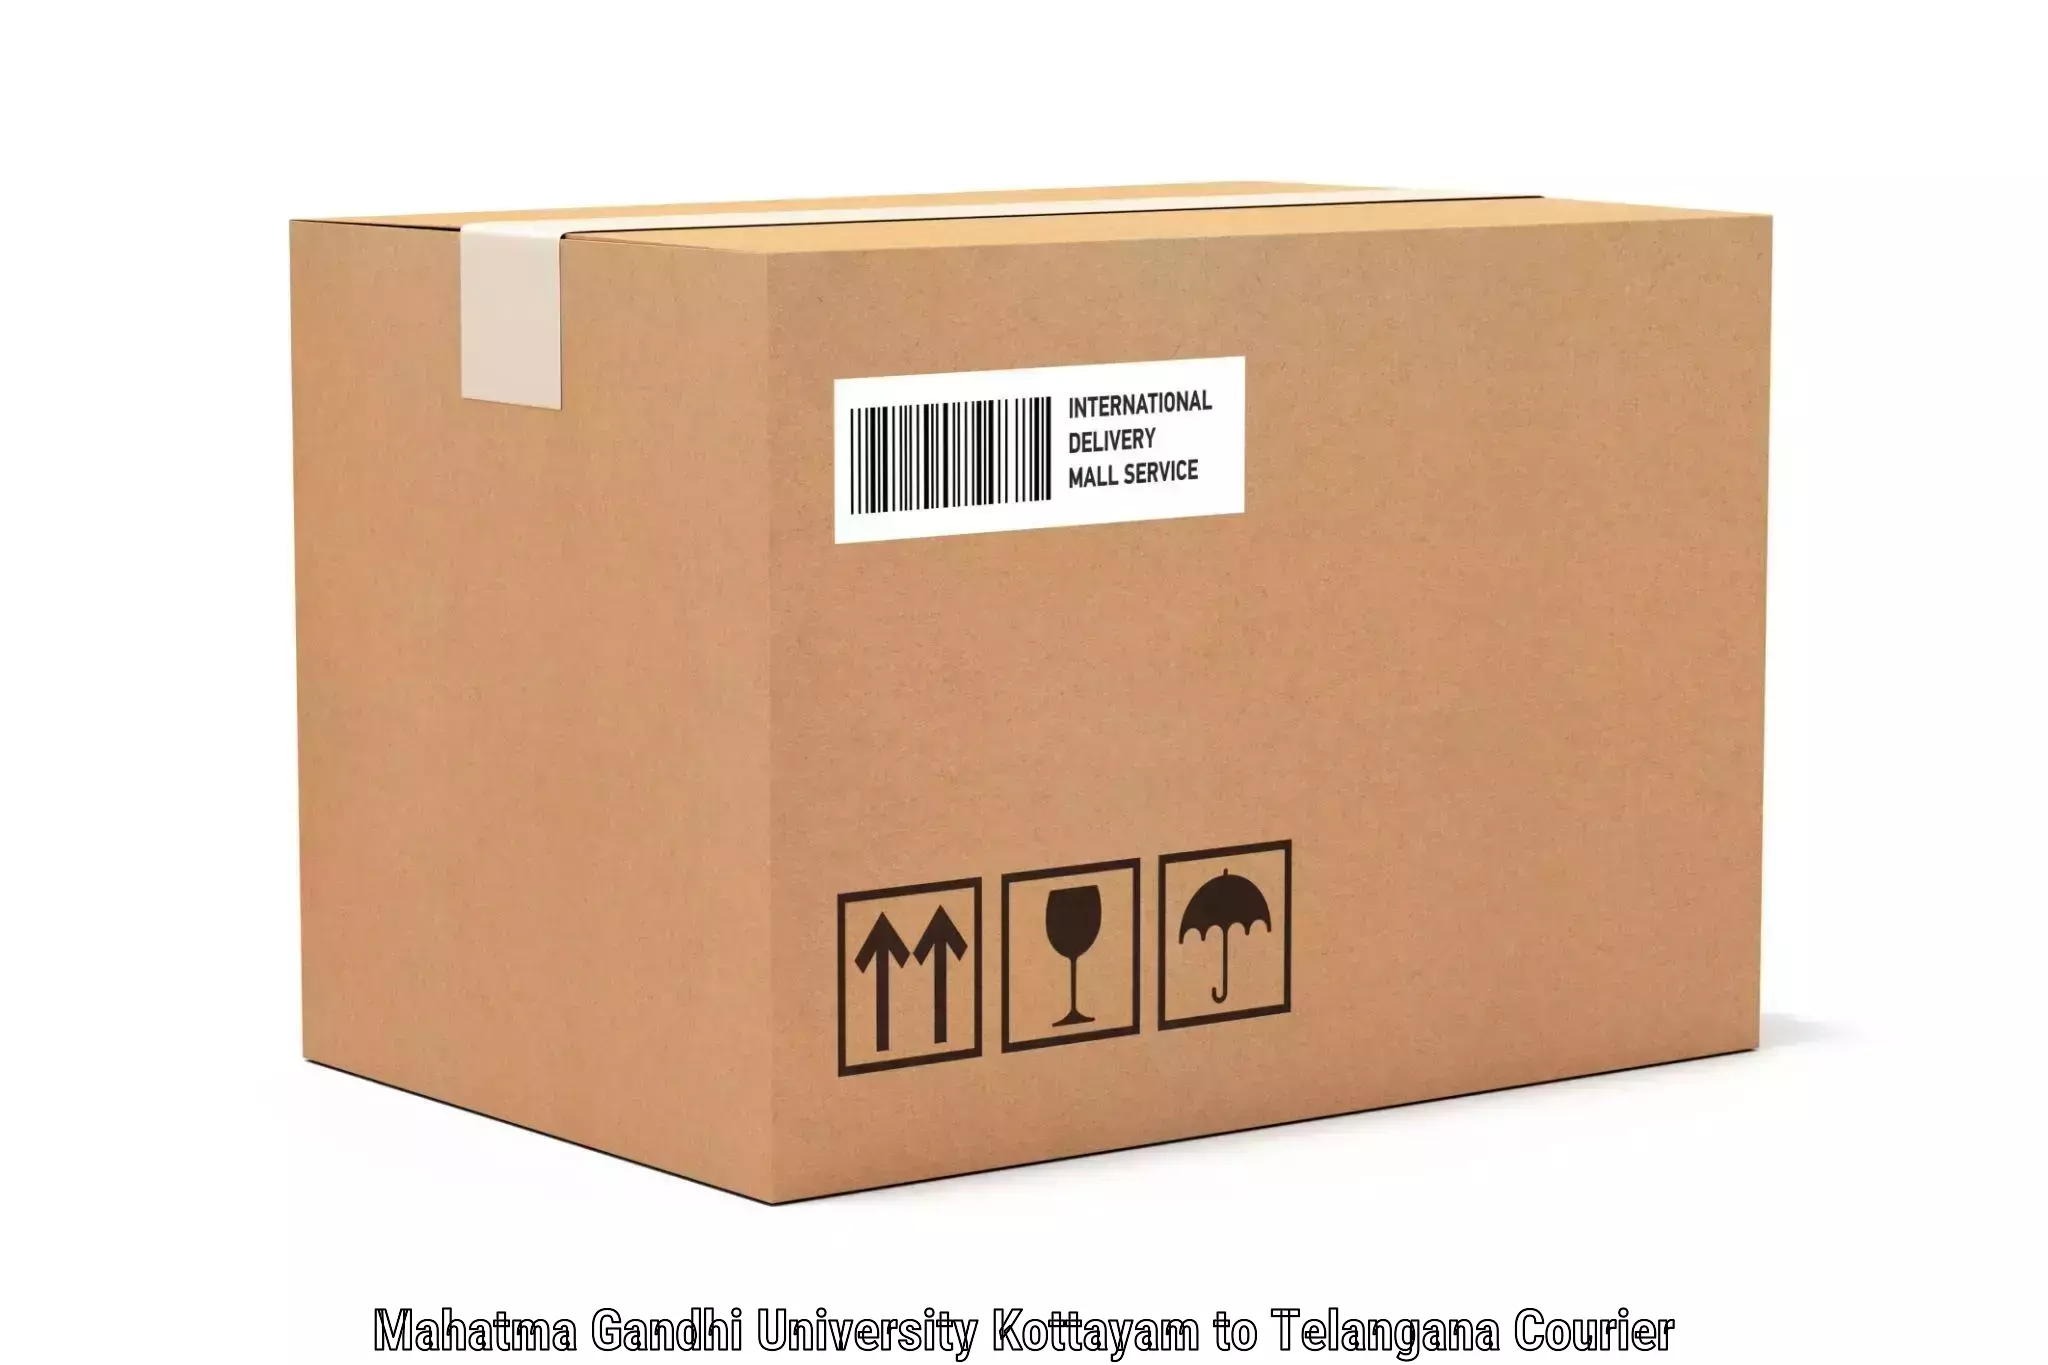 Luggage delivery system in Mahatma Gandhi University Kottayam to Yellareddy